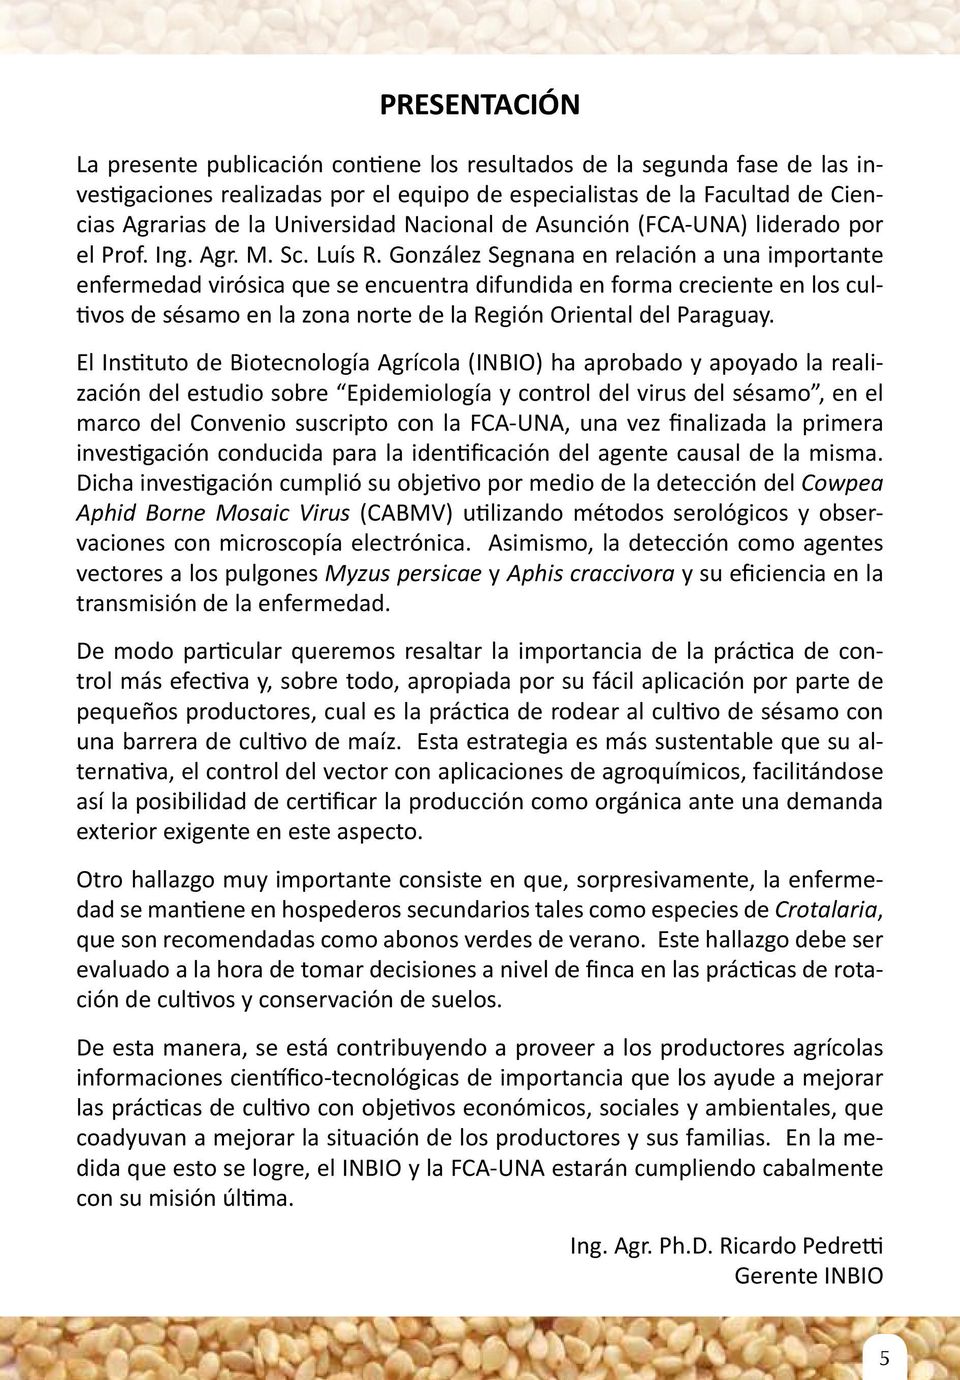 González Segnana en relación a una importante enfermedad virósica que se encuentra difundida en forma creciente en los cultivos de sésamo en la zona norte de la Región Oriental del Paraguay.